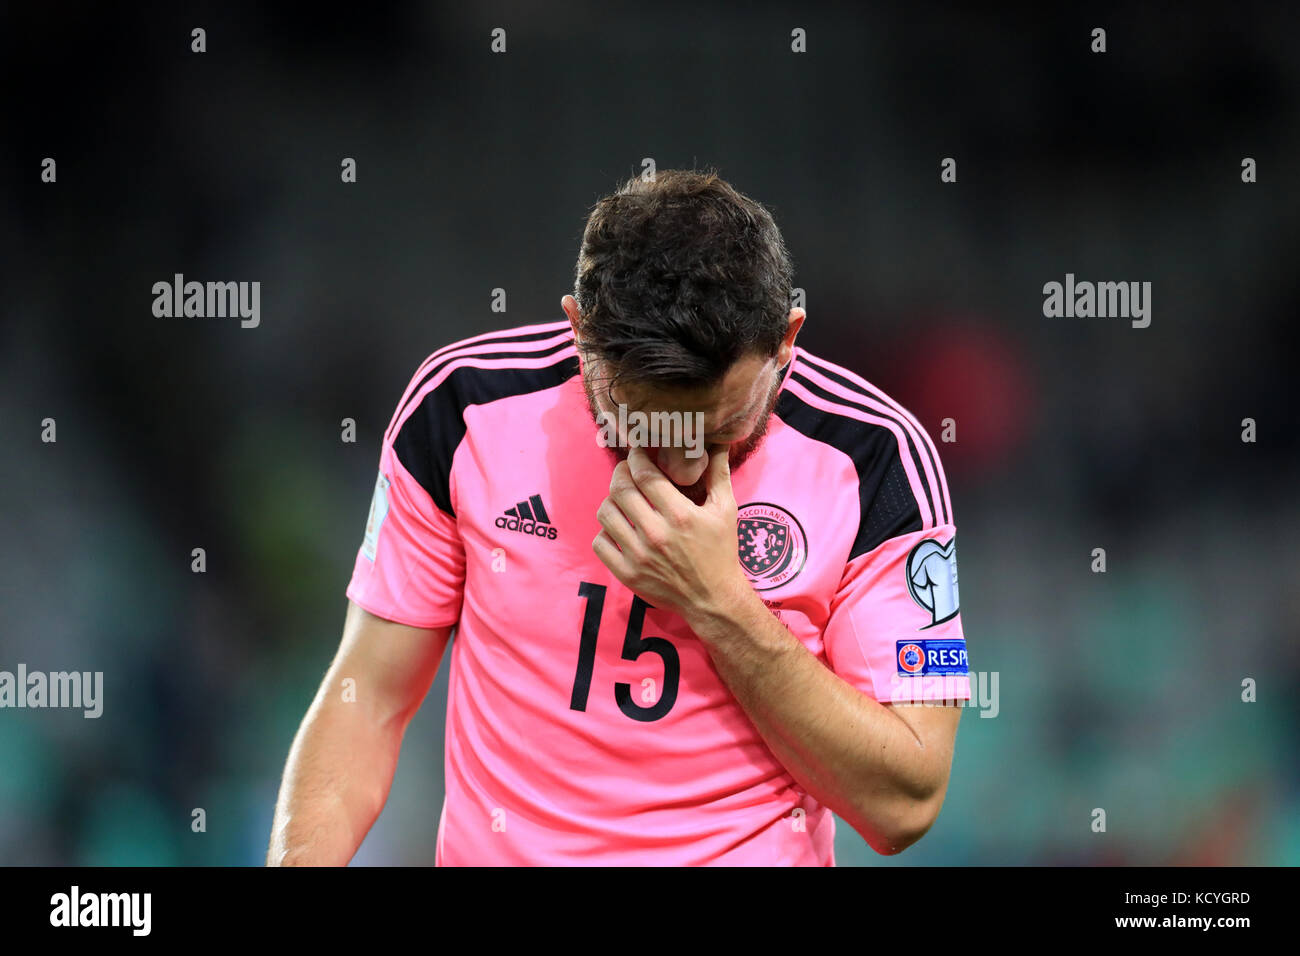 Schottlands robert Snodgrass erscheint niedergeschlagen nach dem letzten während der FIFA WM 2018 Qualifikation Gruppe f Spiel im Stadion Stožice, Ljubljana Pfeifen. Stockfoto